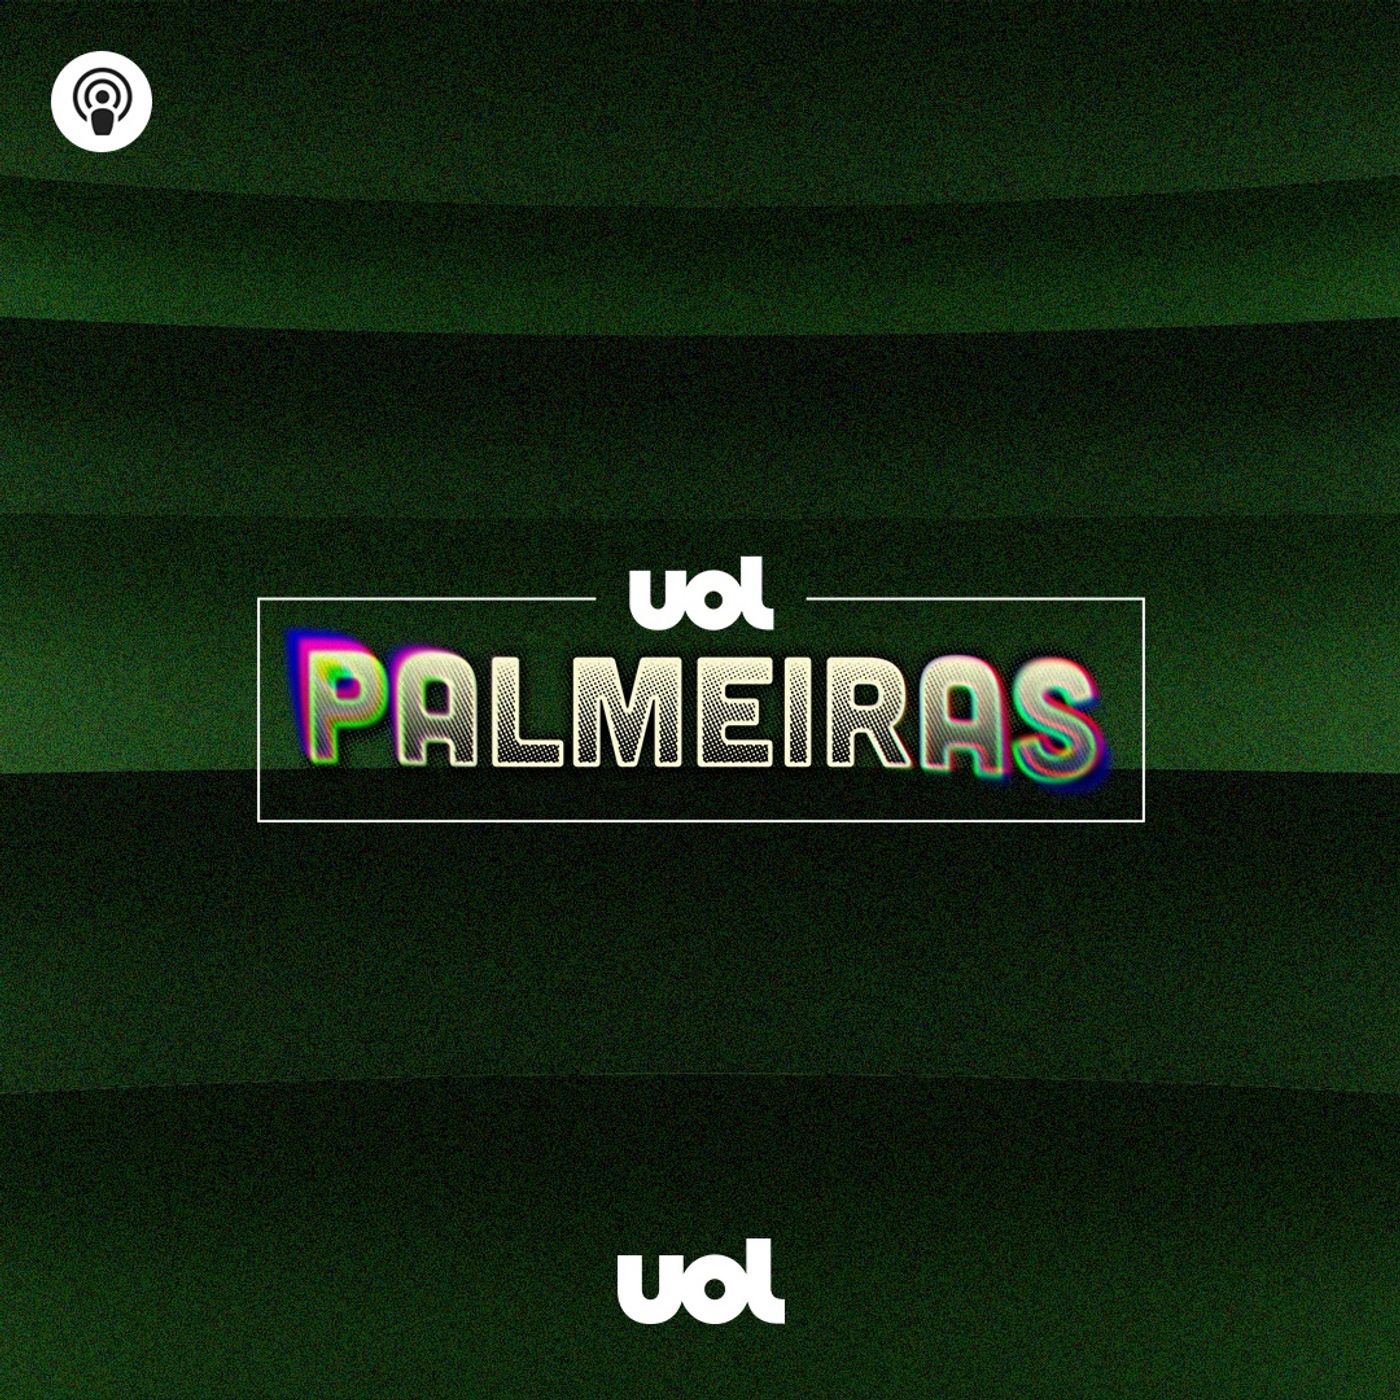 #35: Com Veiga decisivo, Palmeiras vira contra Grêmio e vence a 4ª seguida